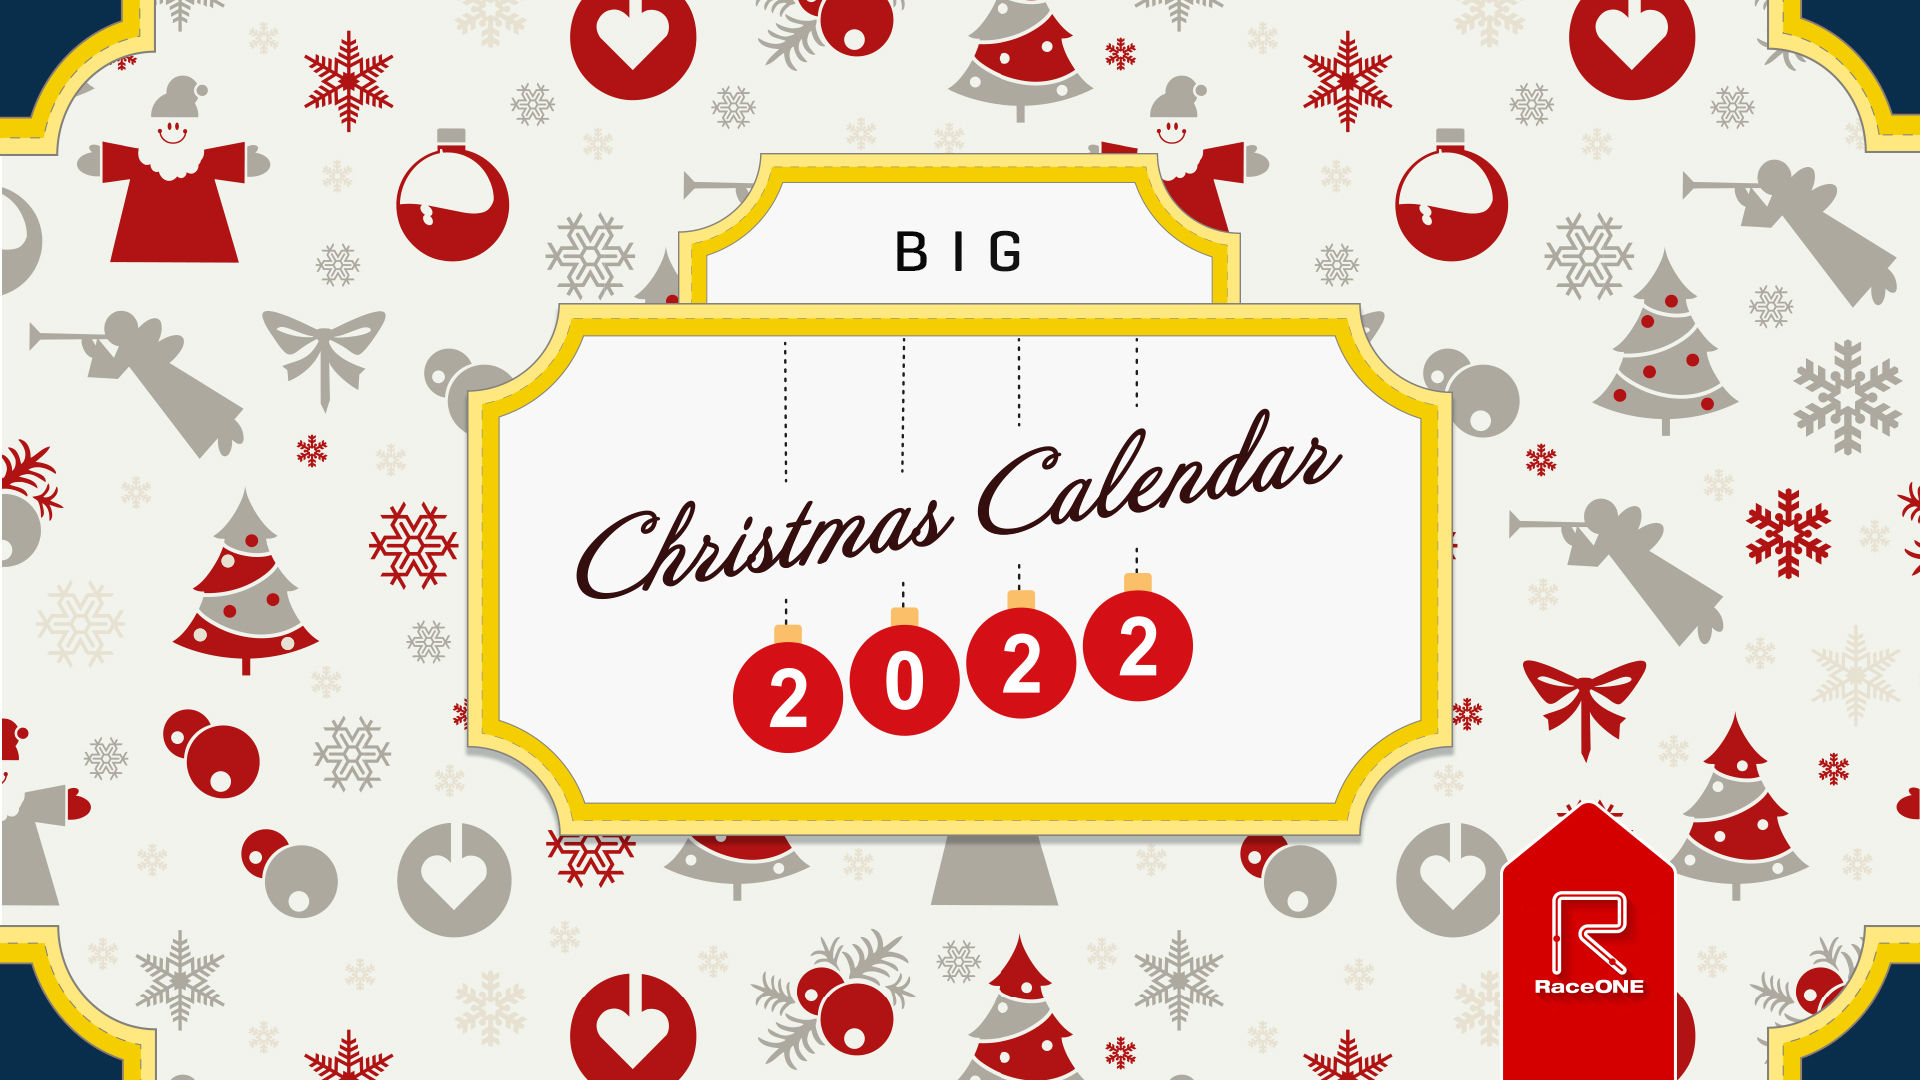 Stora Julkalendern 2022 - Lucka #6